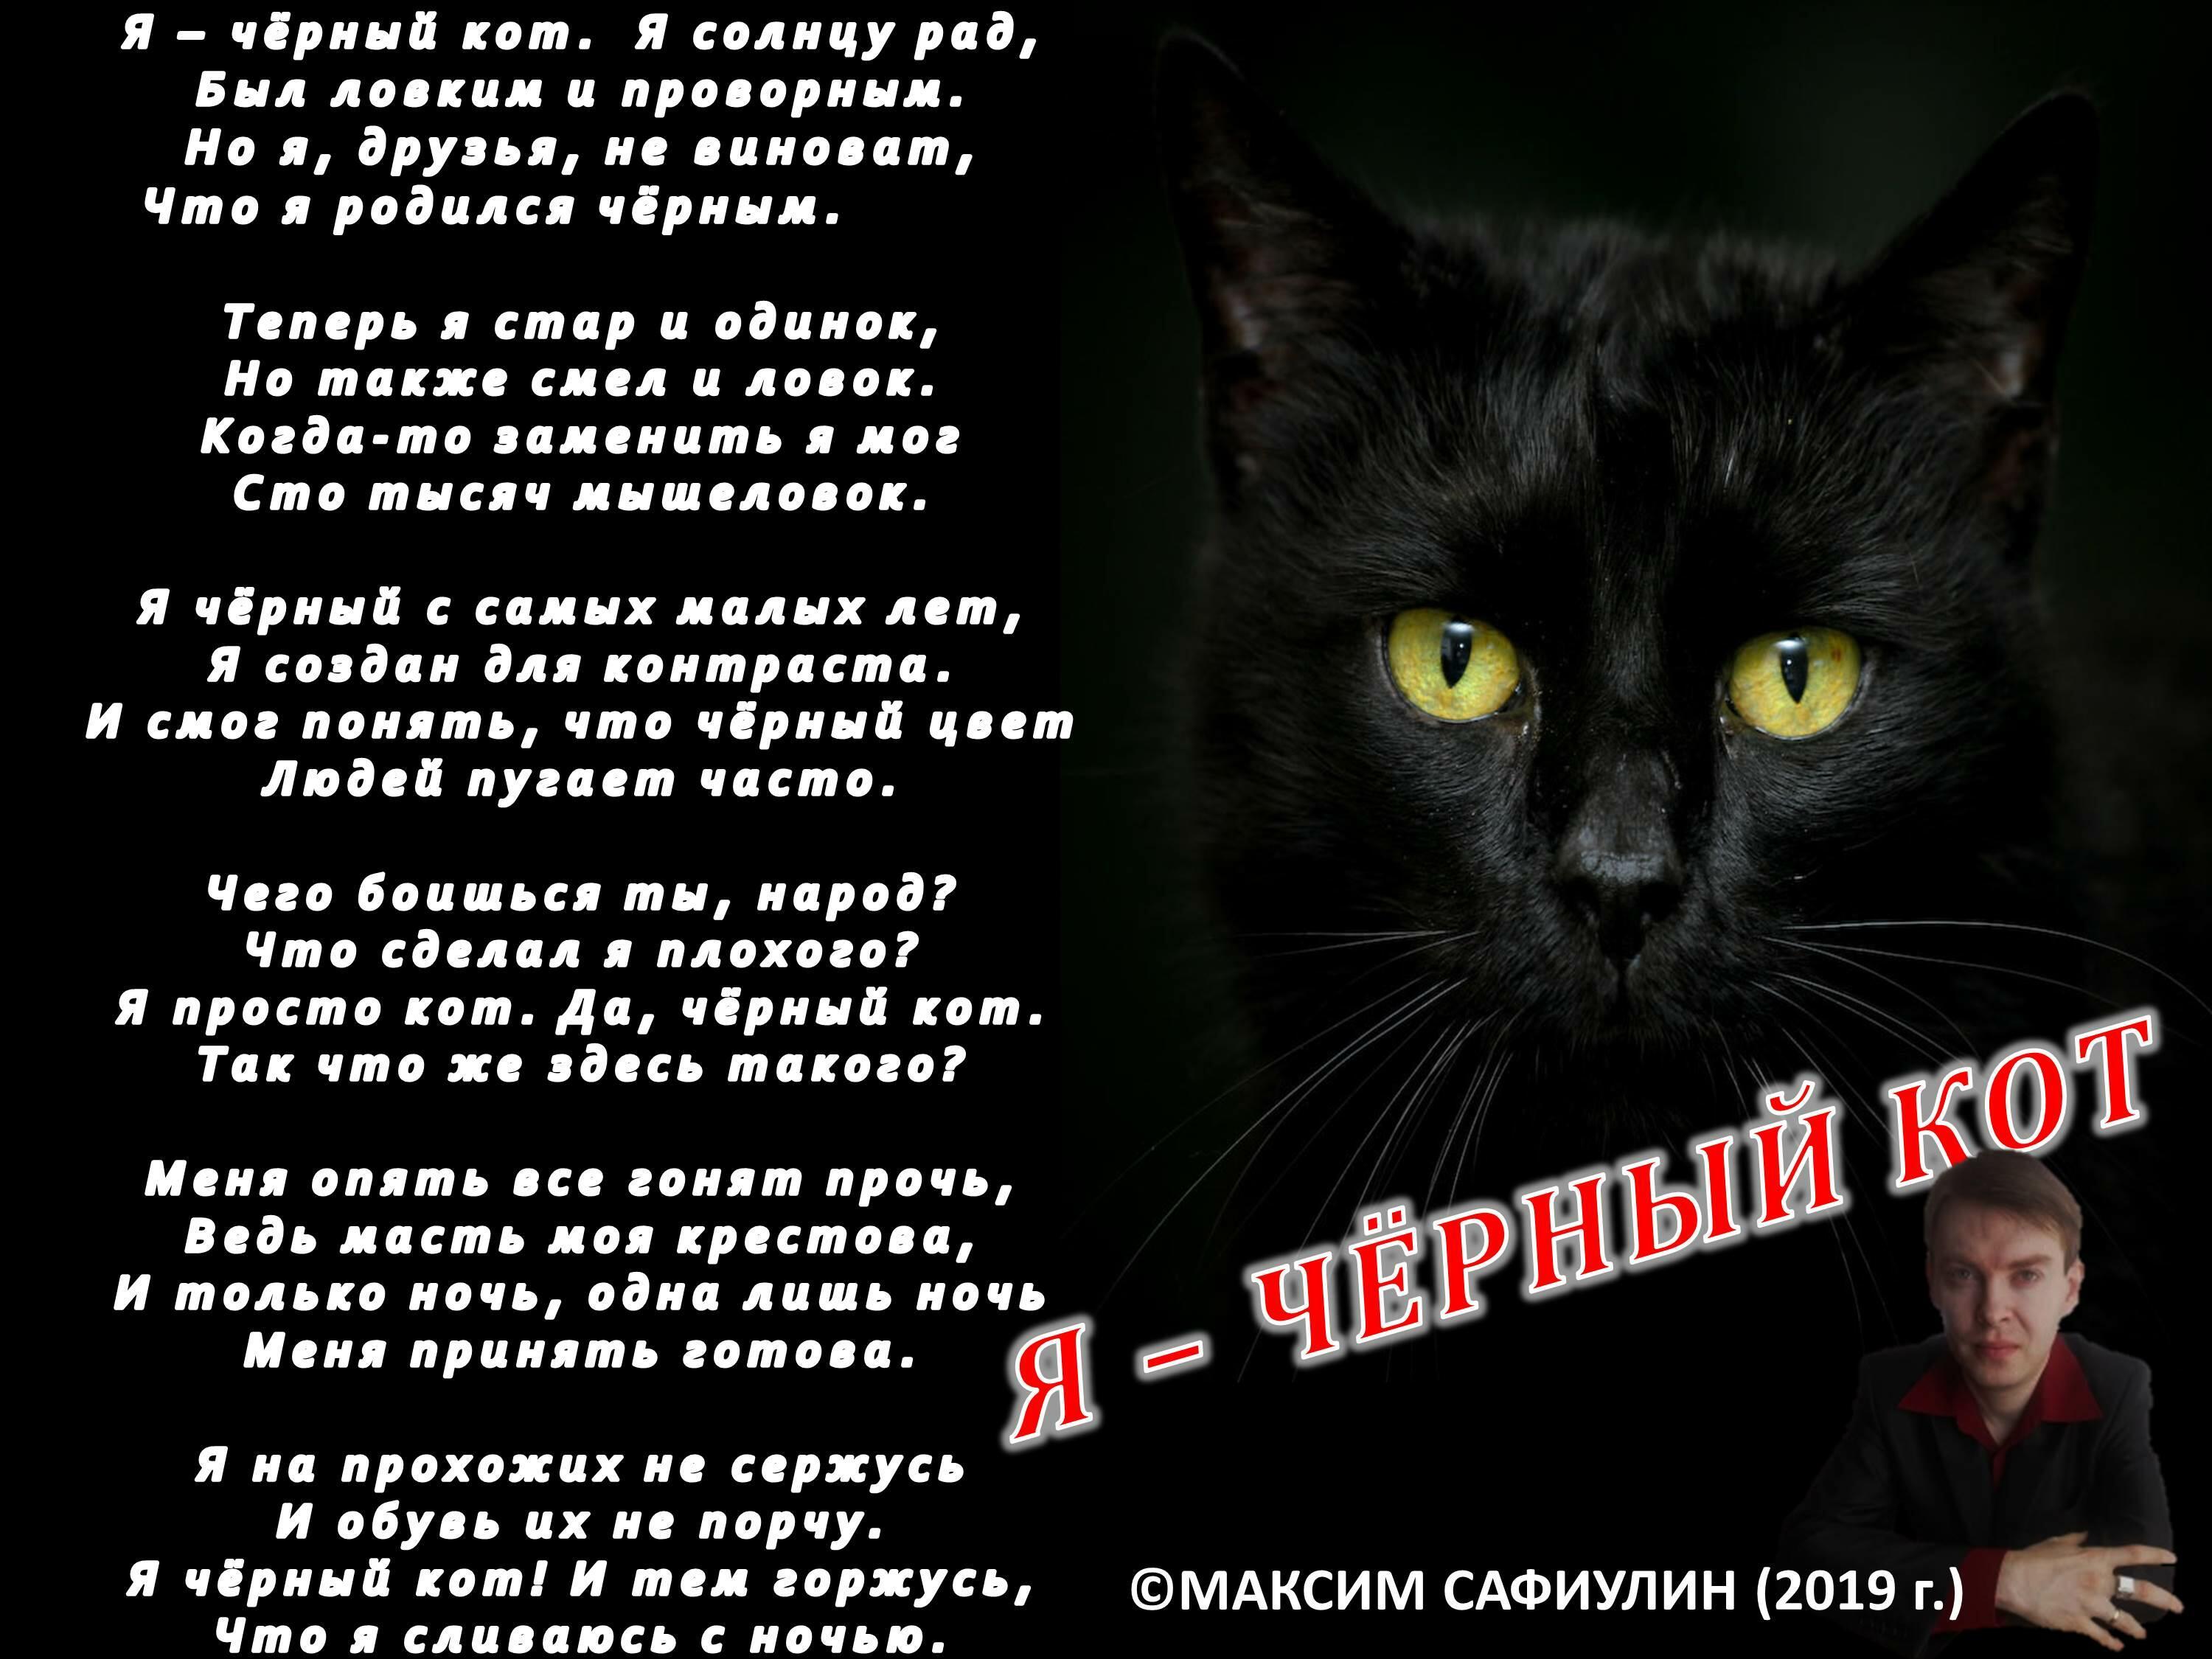 Слова про черный. Стих про черного кота. Стих о черном коте. Стих про черного котенка. Стих про черного кота для детей.